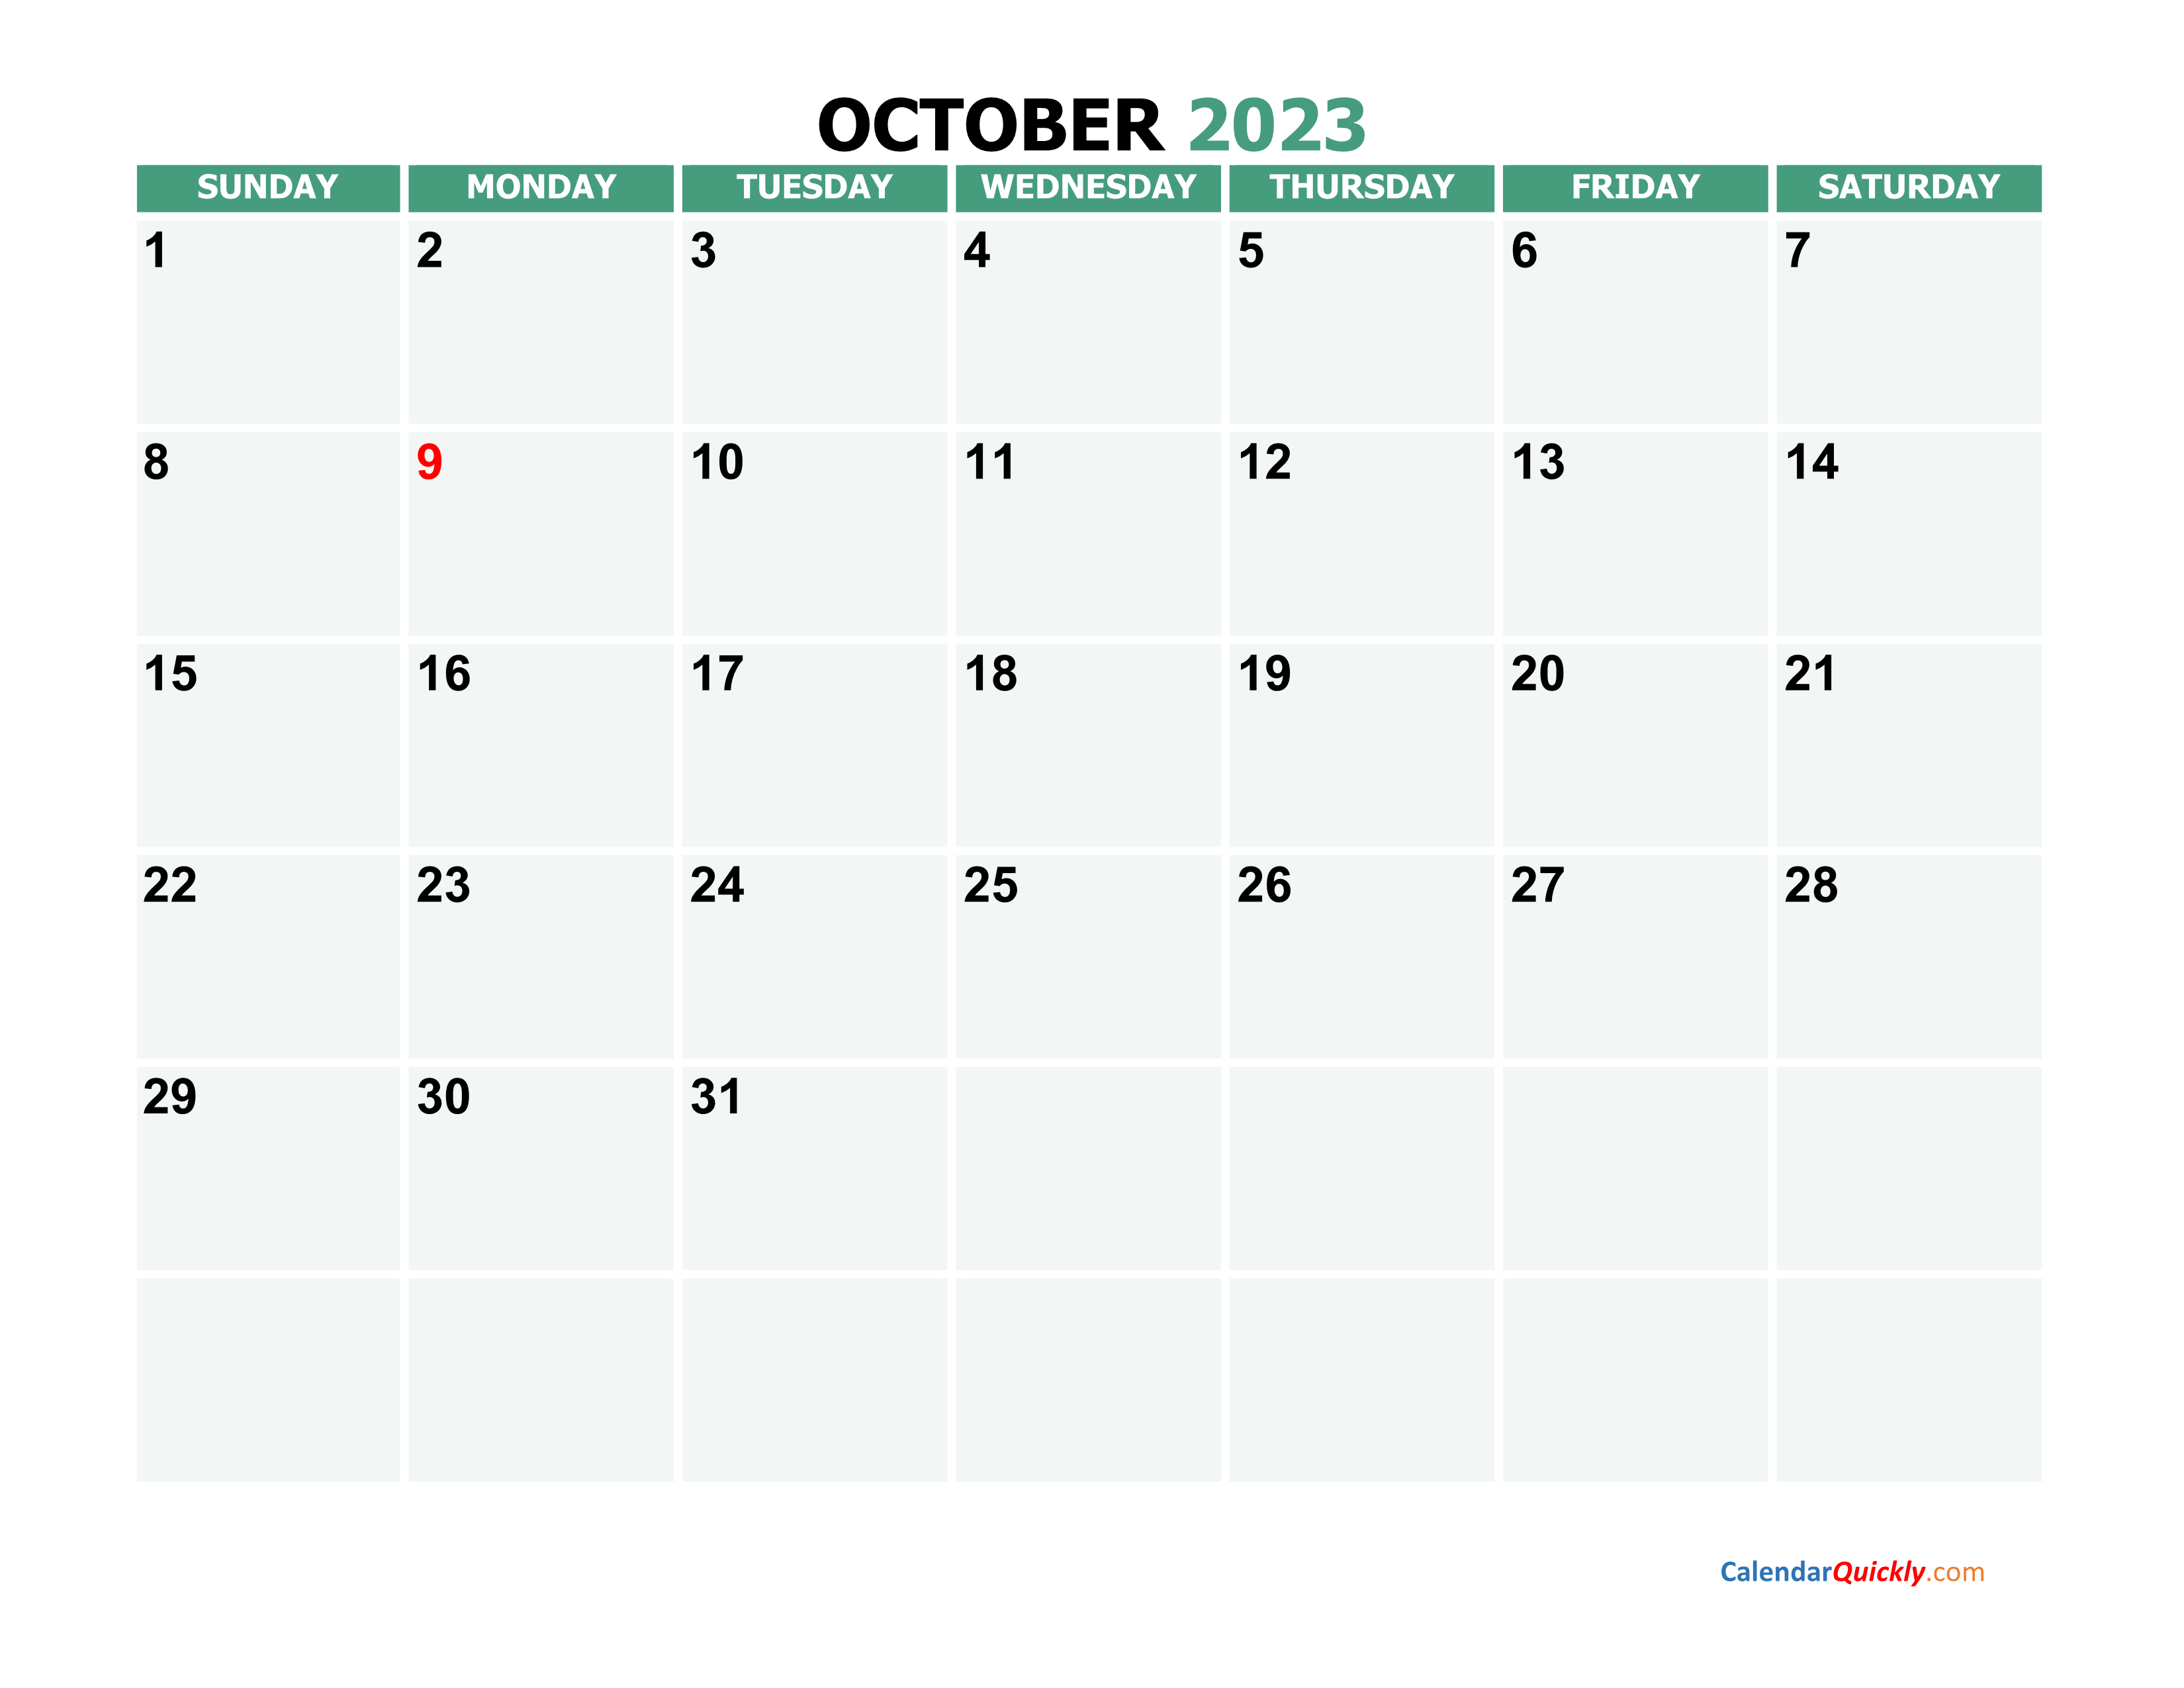 October 2023 Calendars Calendar Quickly